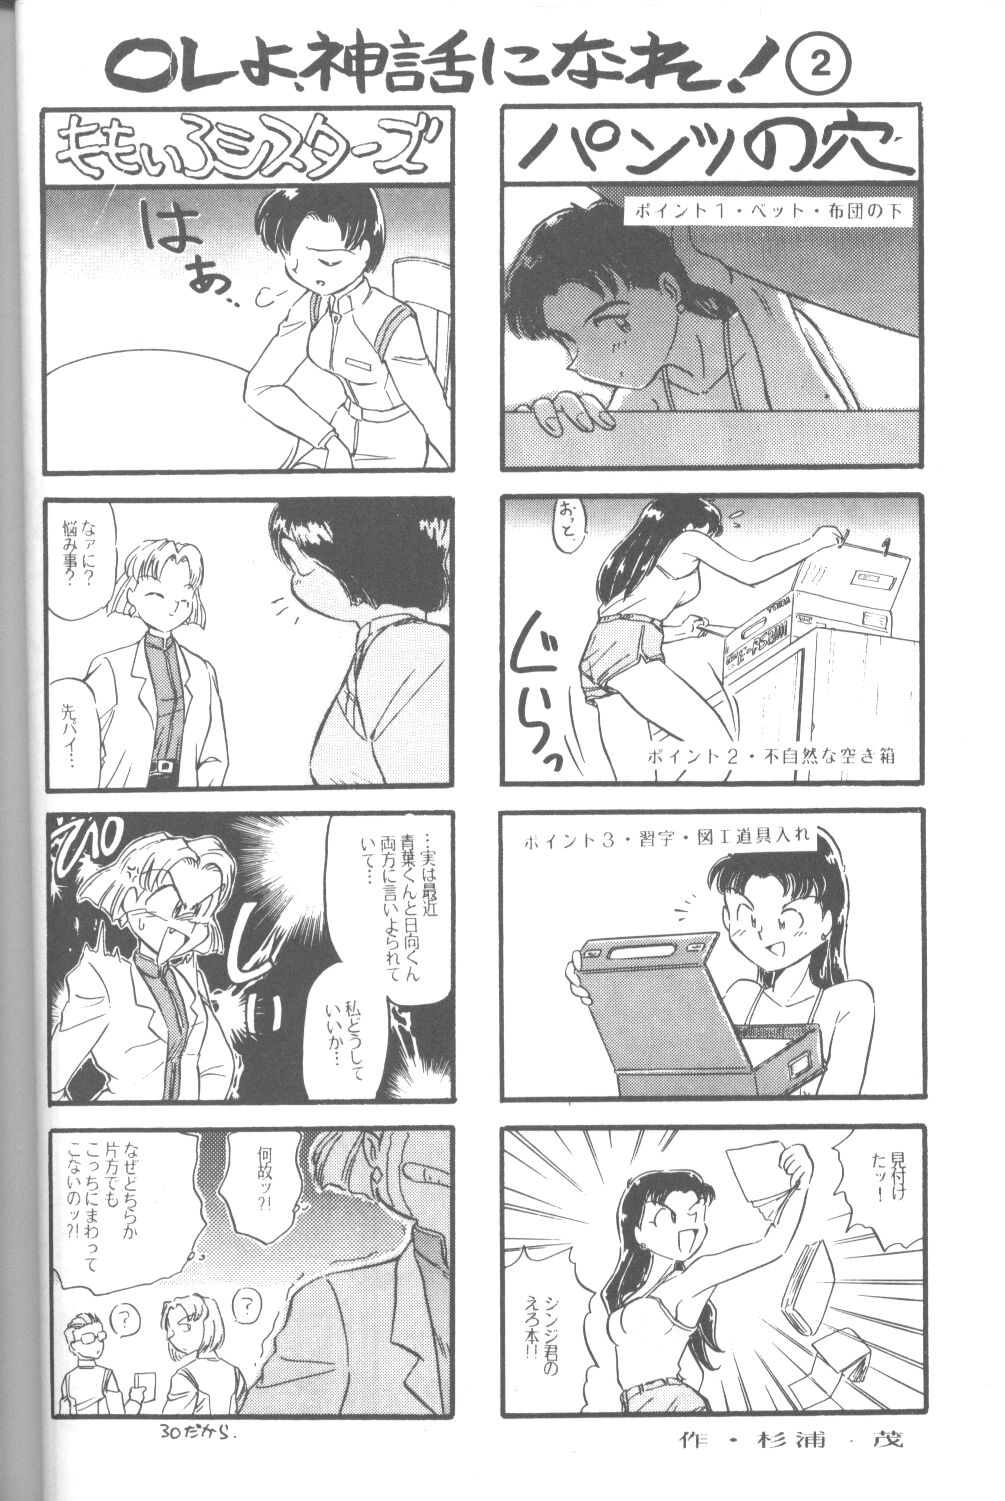 [Takahiro Kutugi] Friends Yes We're (Evangelion) page 33 full